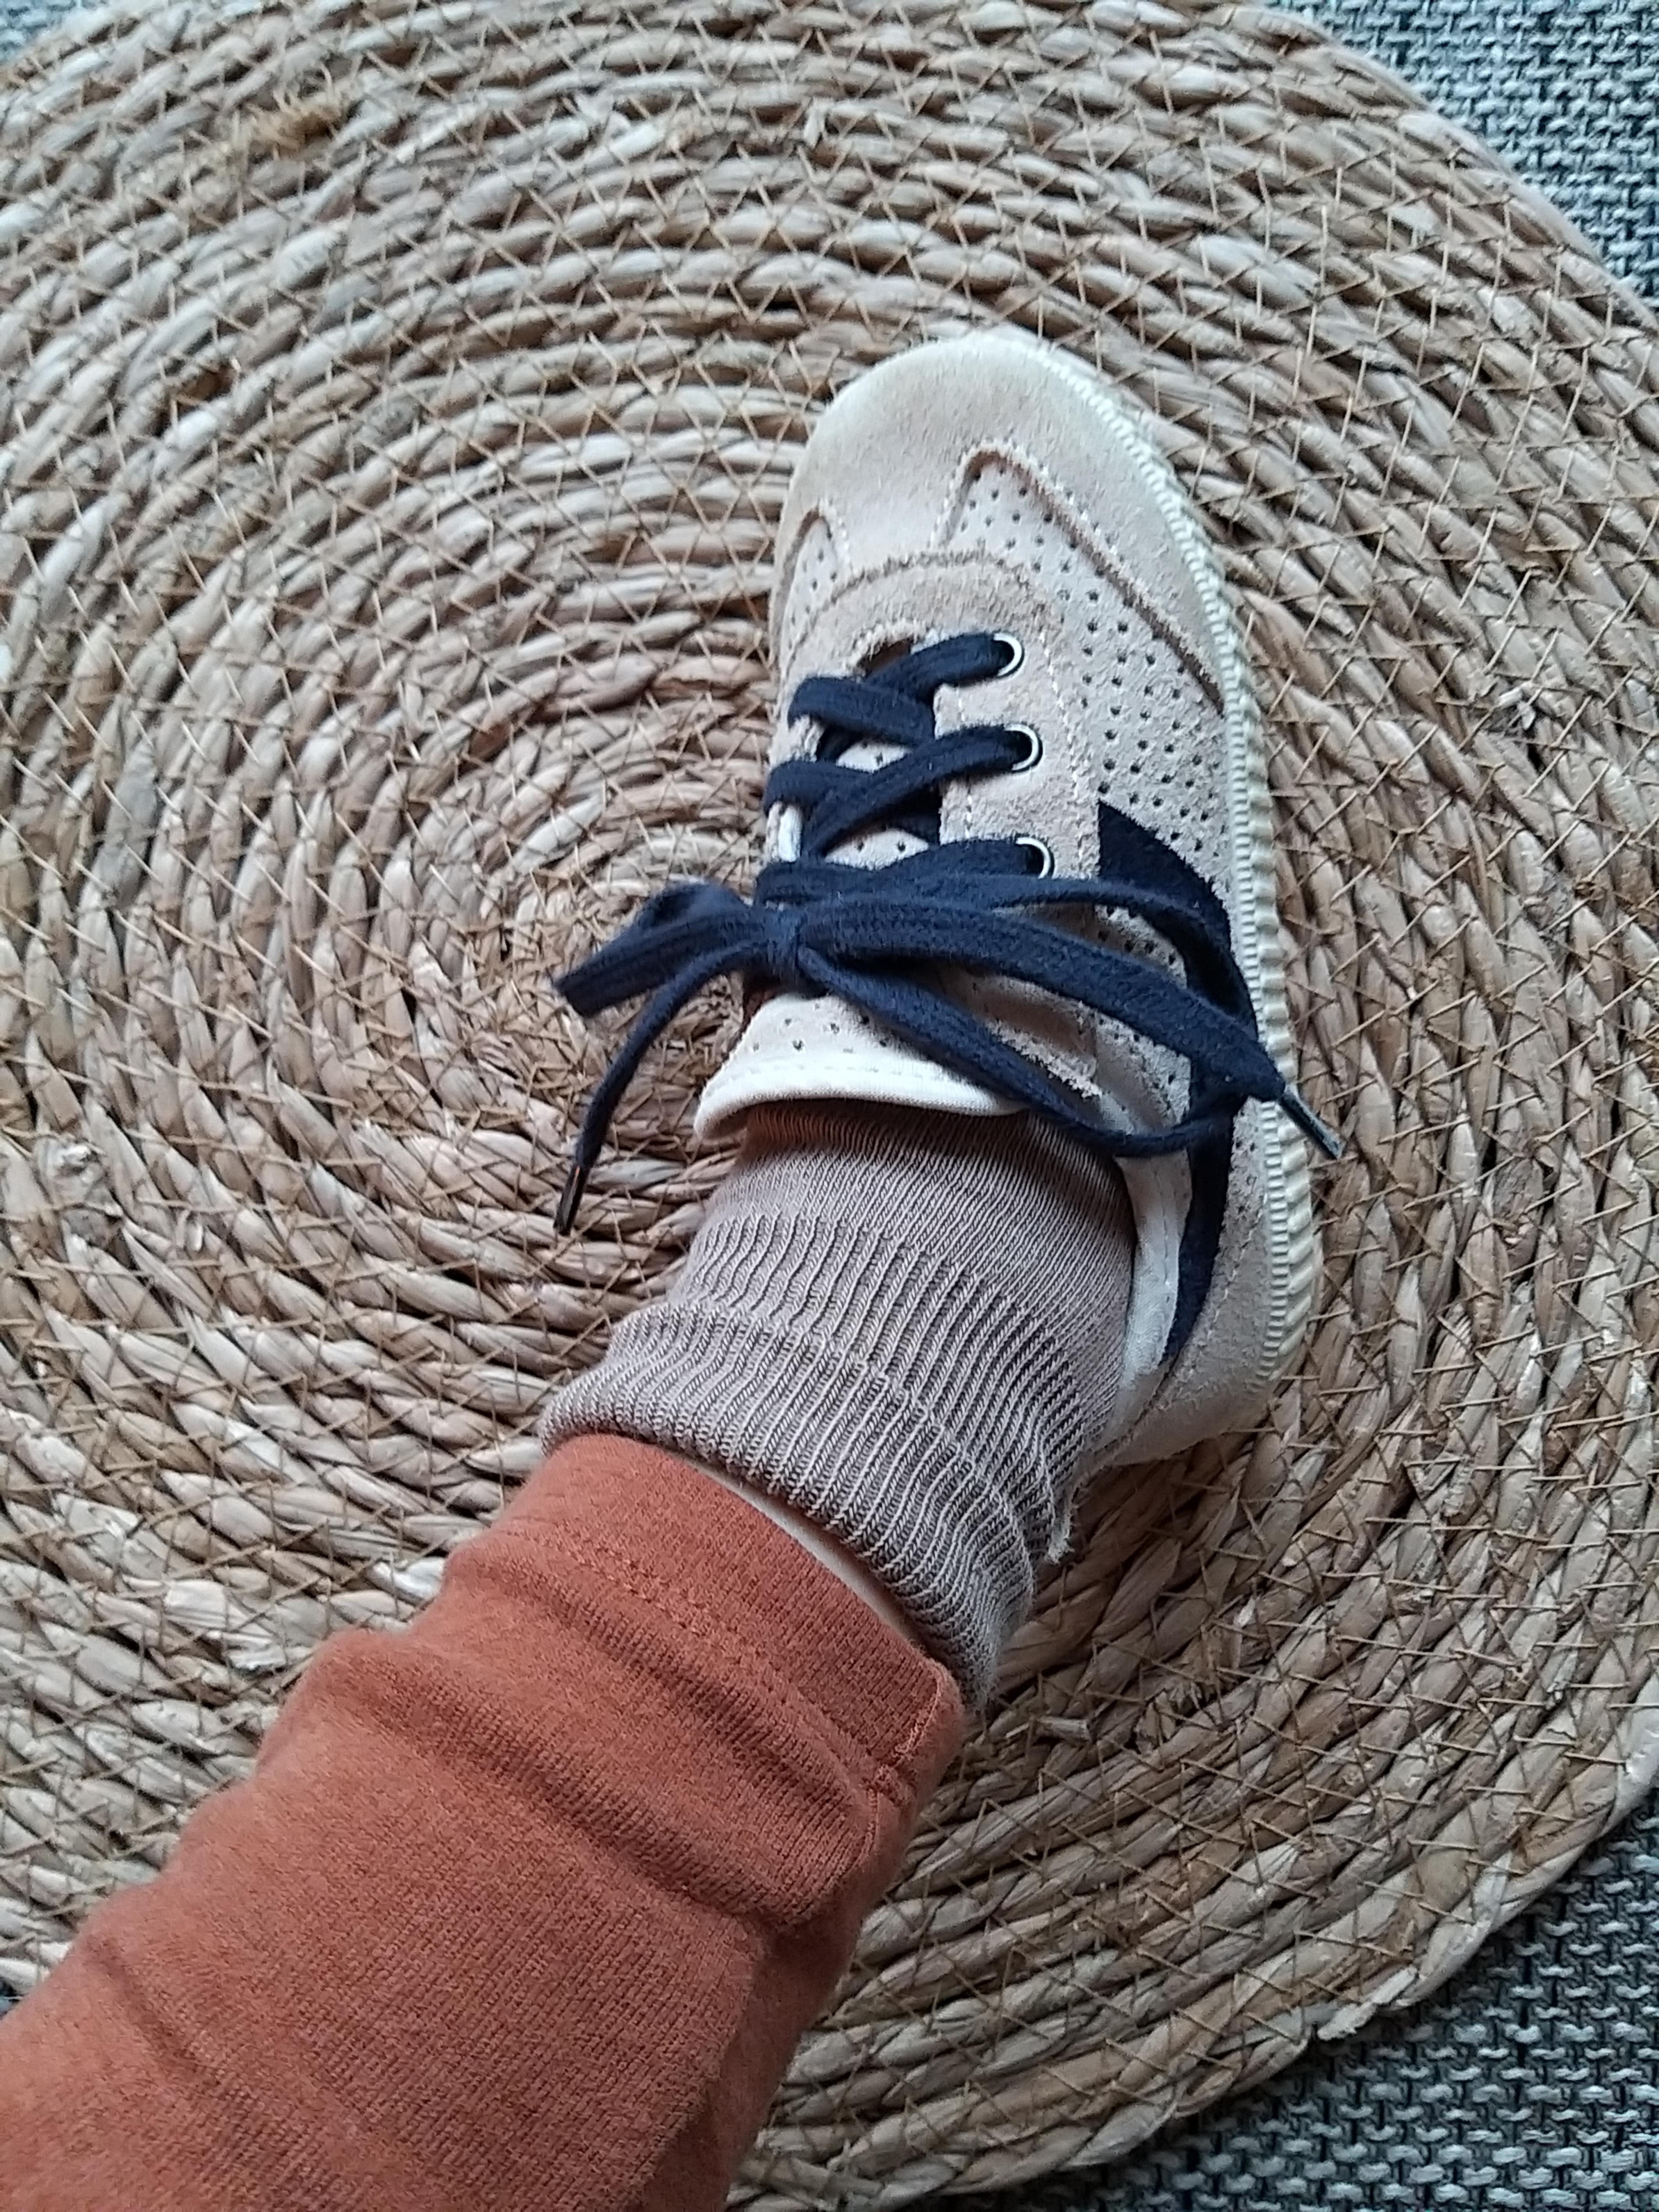 #herbstoutfit ♡♡♡ Herbstliche Farben in Kombi mit lässigen Sneaker, Socken und bequemen Hosen 🌿